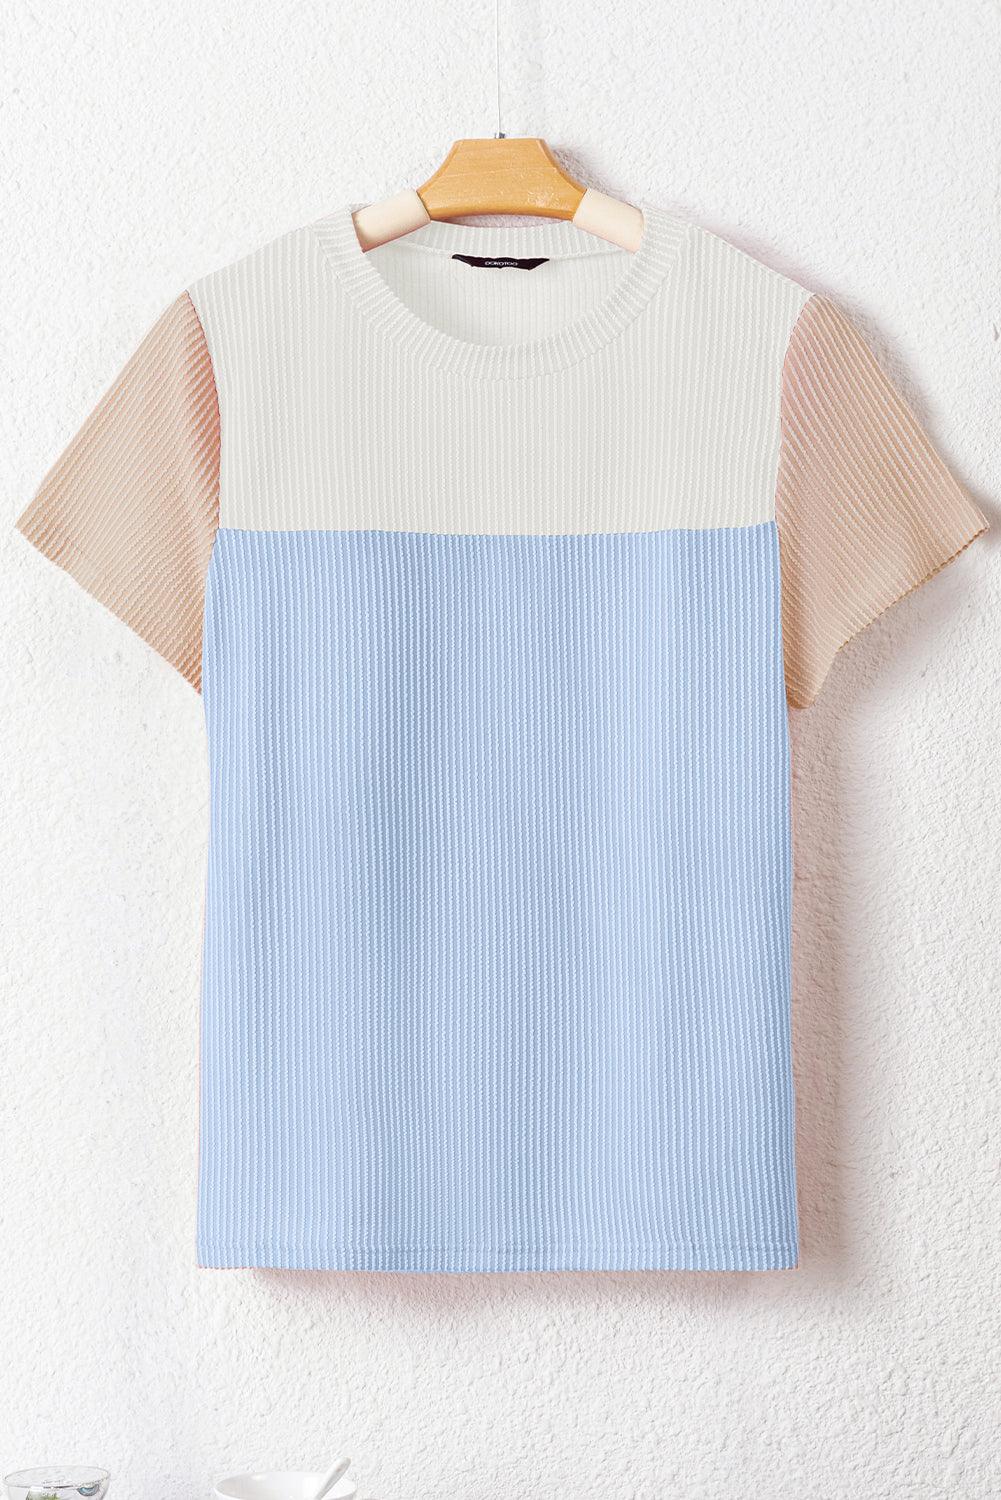 Light Blue Rib Textured Colorblock T Shirt - L & M Kee, LLC